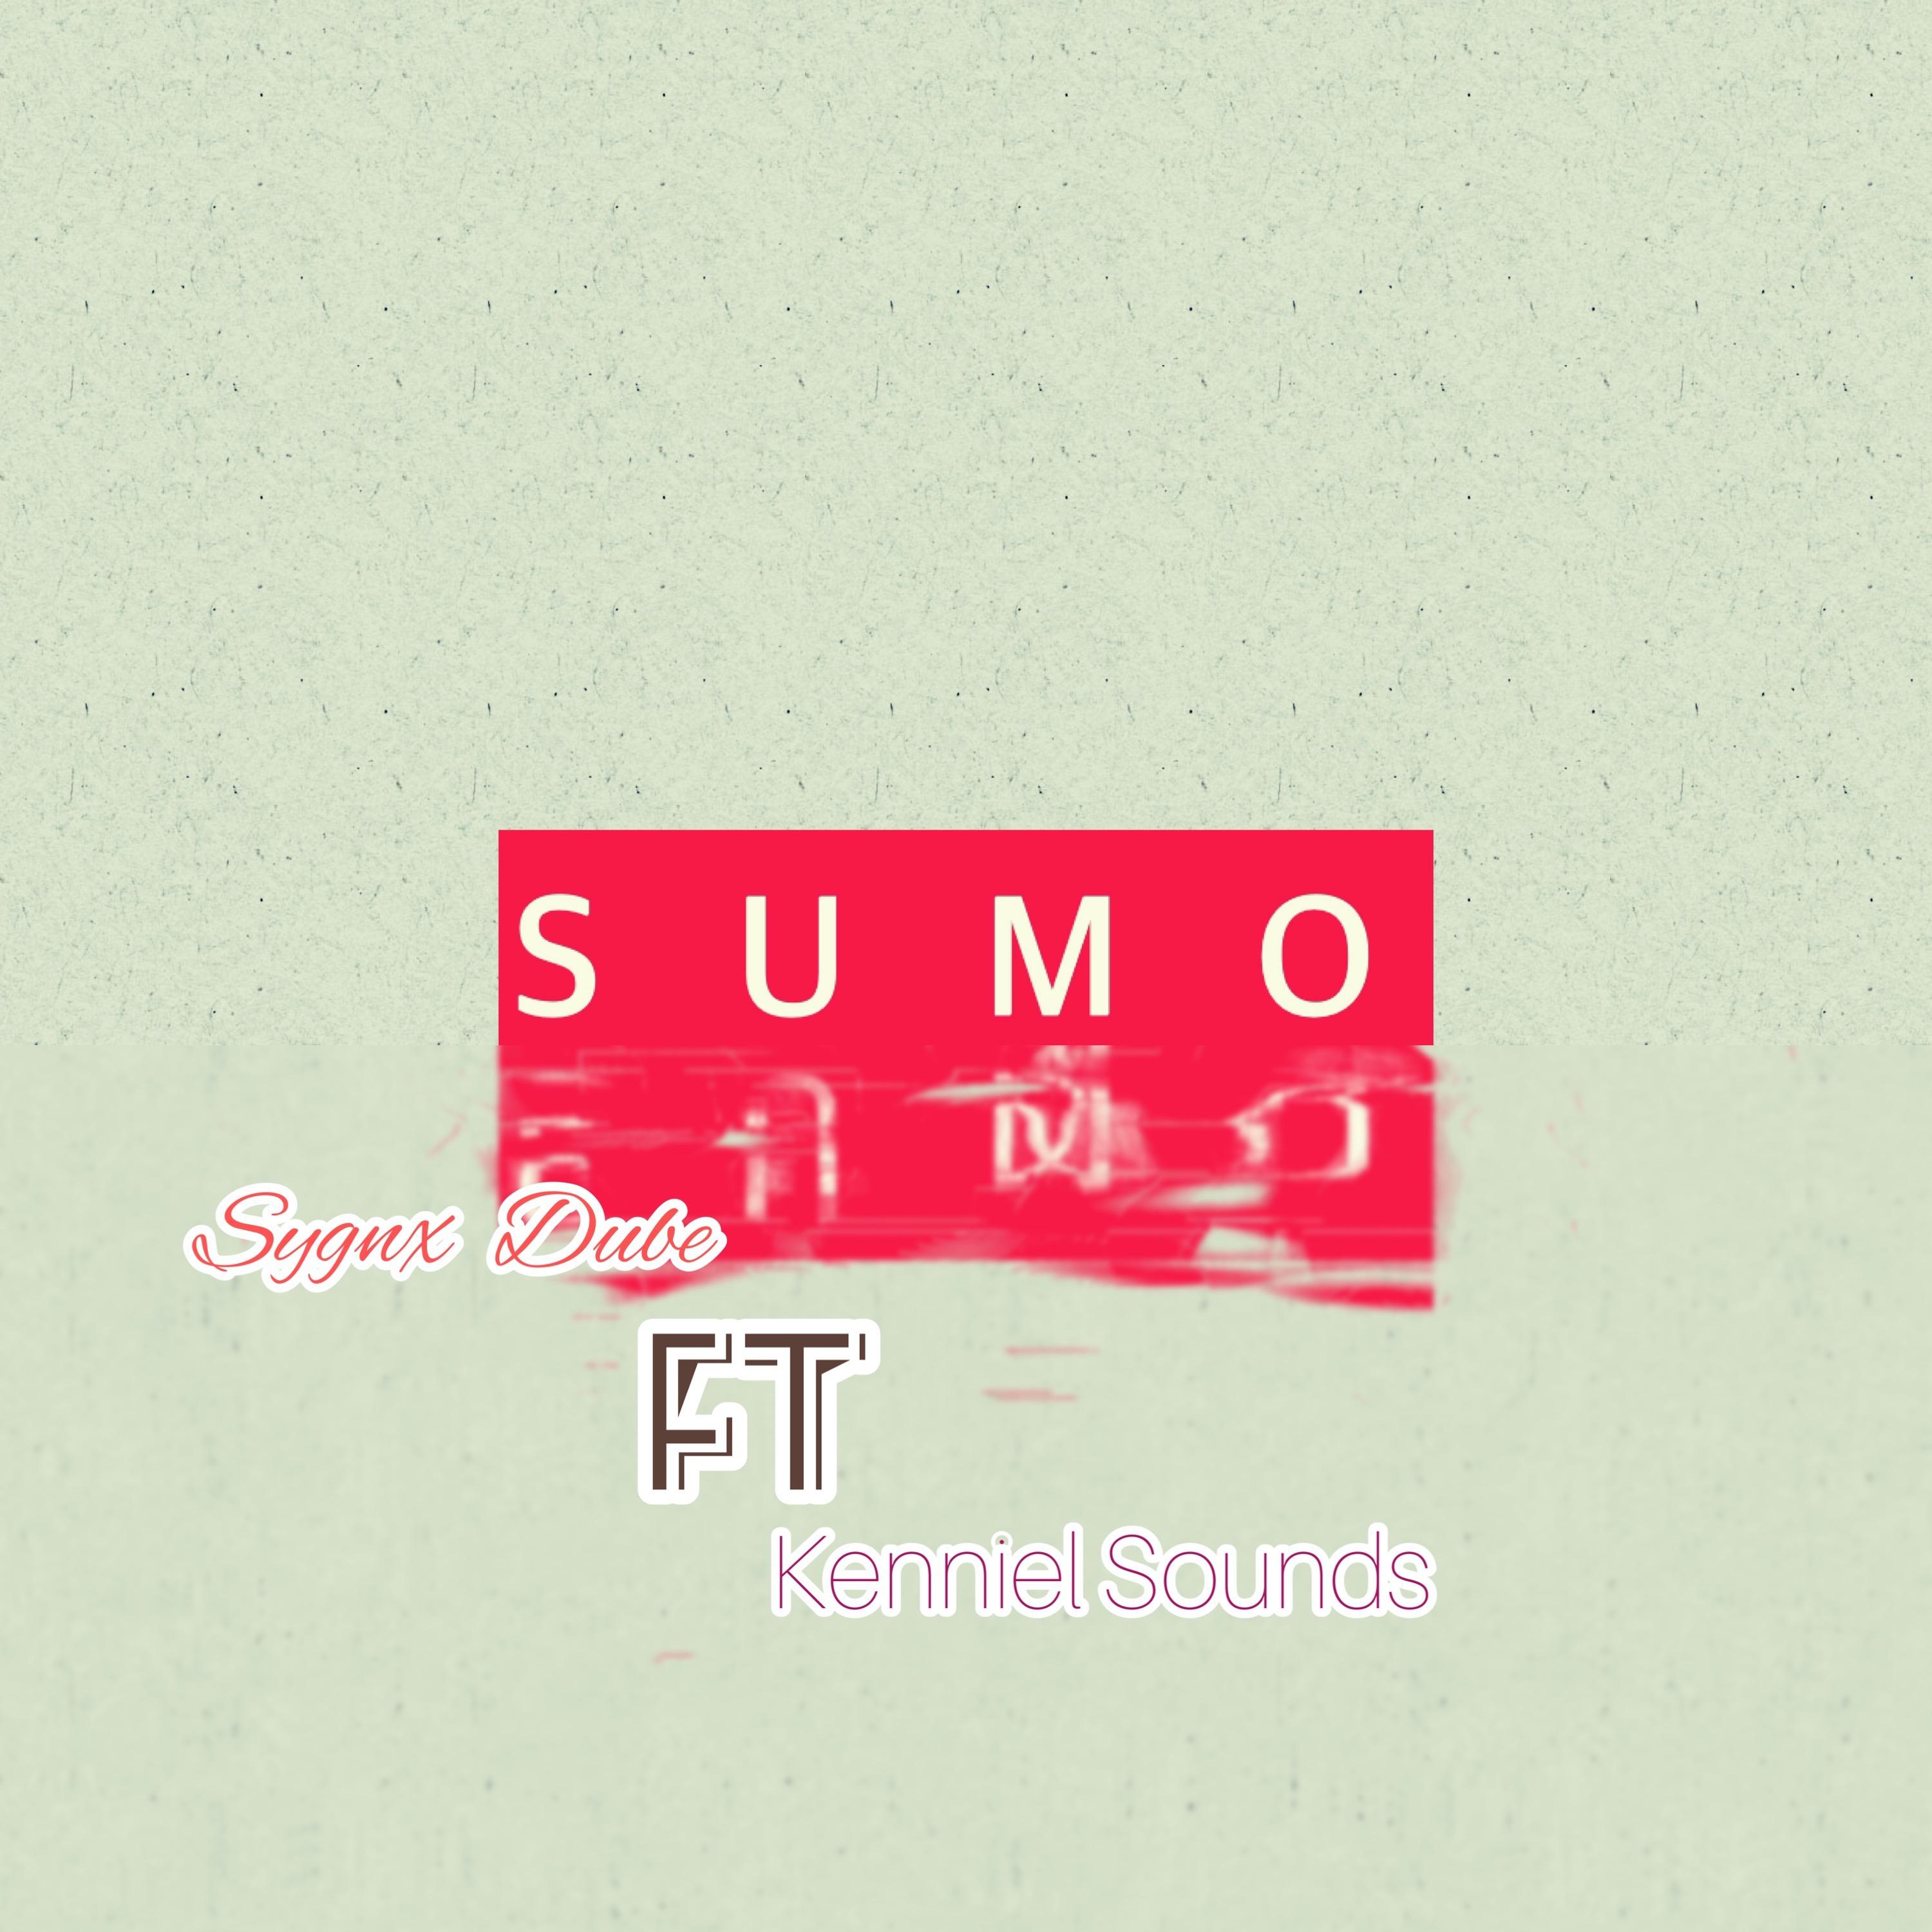 Sygnx Dube - Sumo